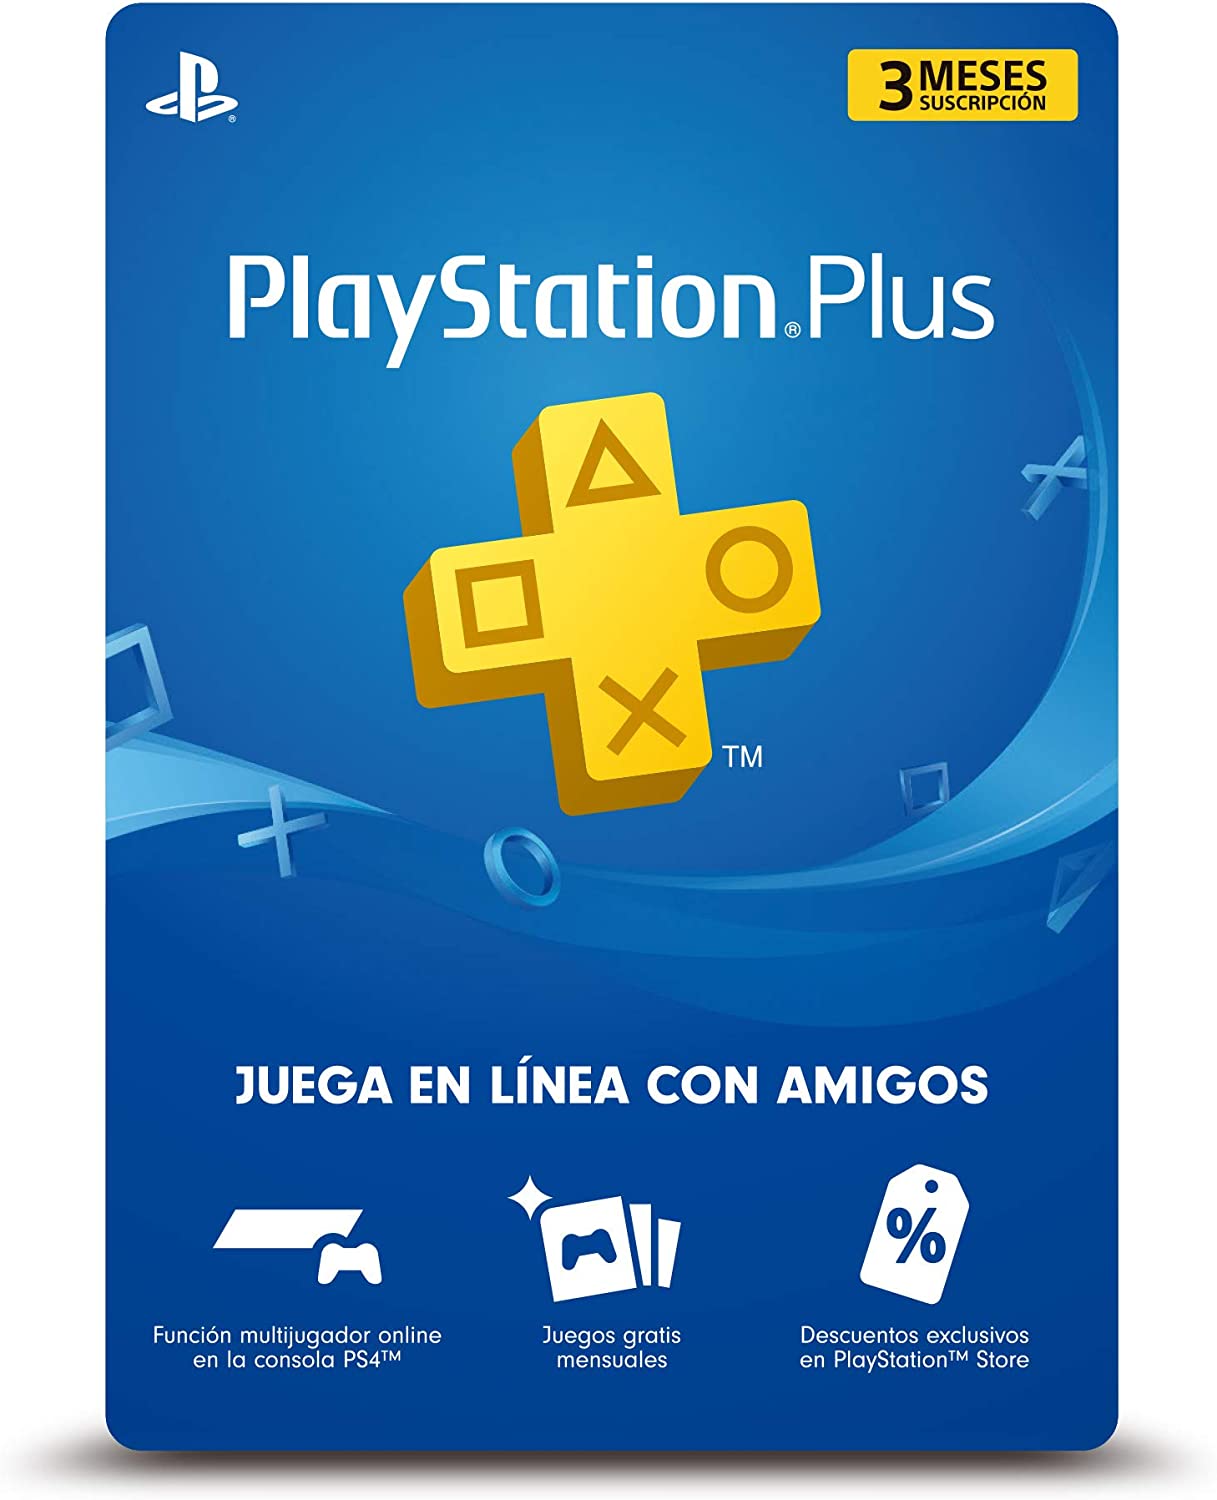 Tarjeta electrónica de suscripción de 3 meses a PlayStation Plus